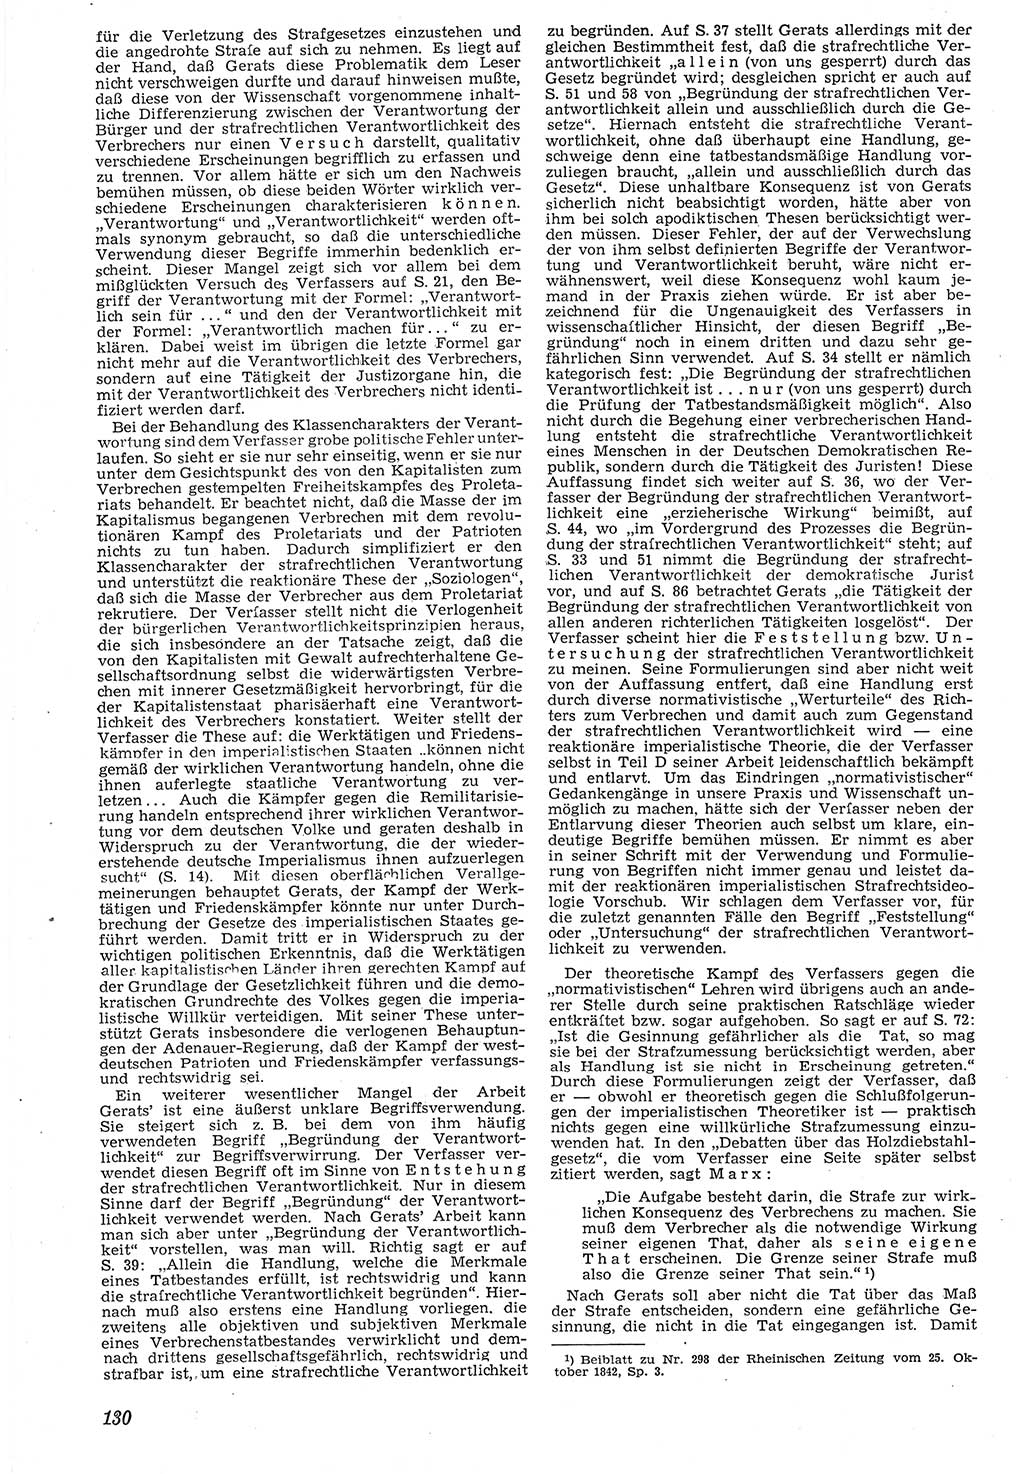 Neue Justiz (NJ), Zeitschrift für Recht und Rechtswissenschaft [Deutsche Demokratische Republik (DDR)], 7. Jahrgang 1953, Seite 130 (NJ DDR 1953, S. 130)